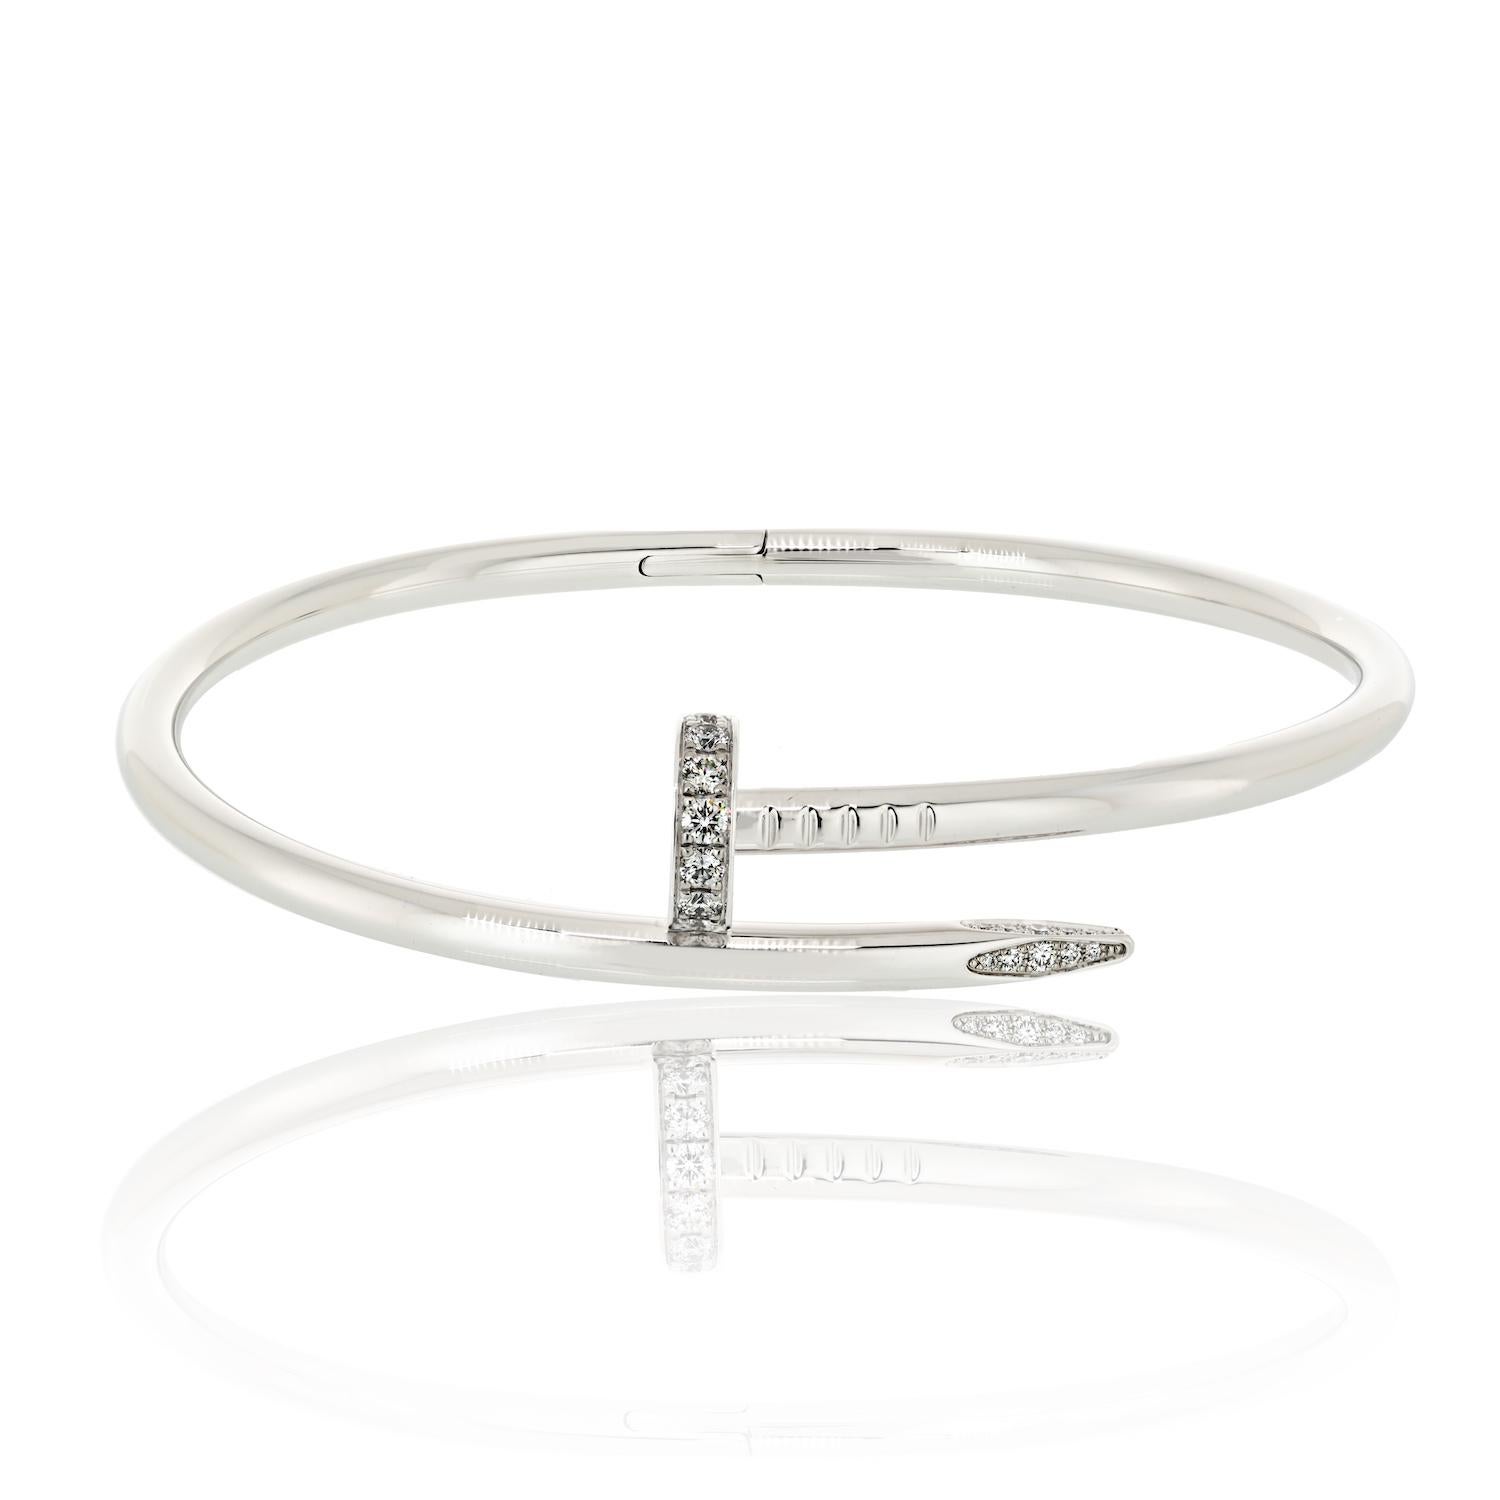 Le bracelet d'occasion Juste Un Clou en or blanc et diamants est un bijou magnifique qui est en excellent état. Ce bracelet est fabriqué en or de haute qualité et présente un motif de clou unique, rehaussé de diamants. Les diamants ajoutent une